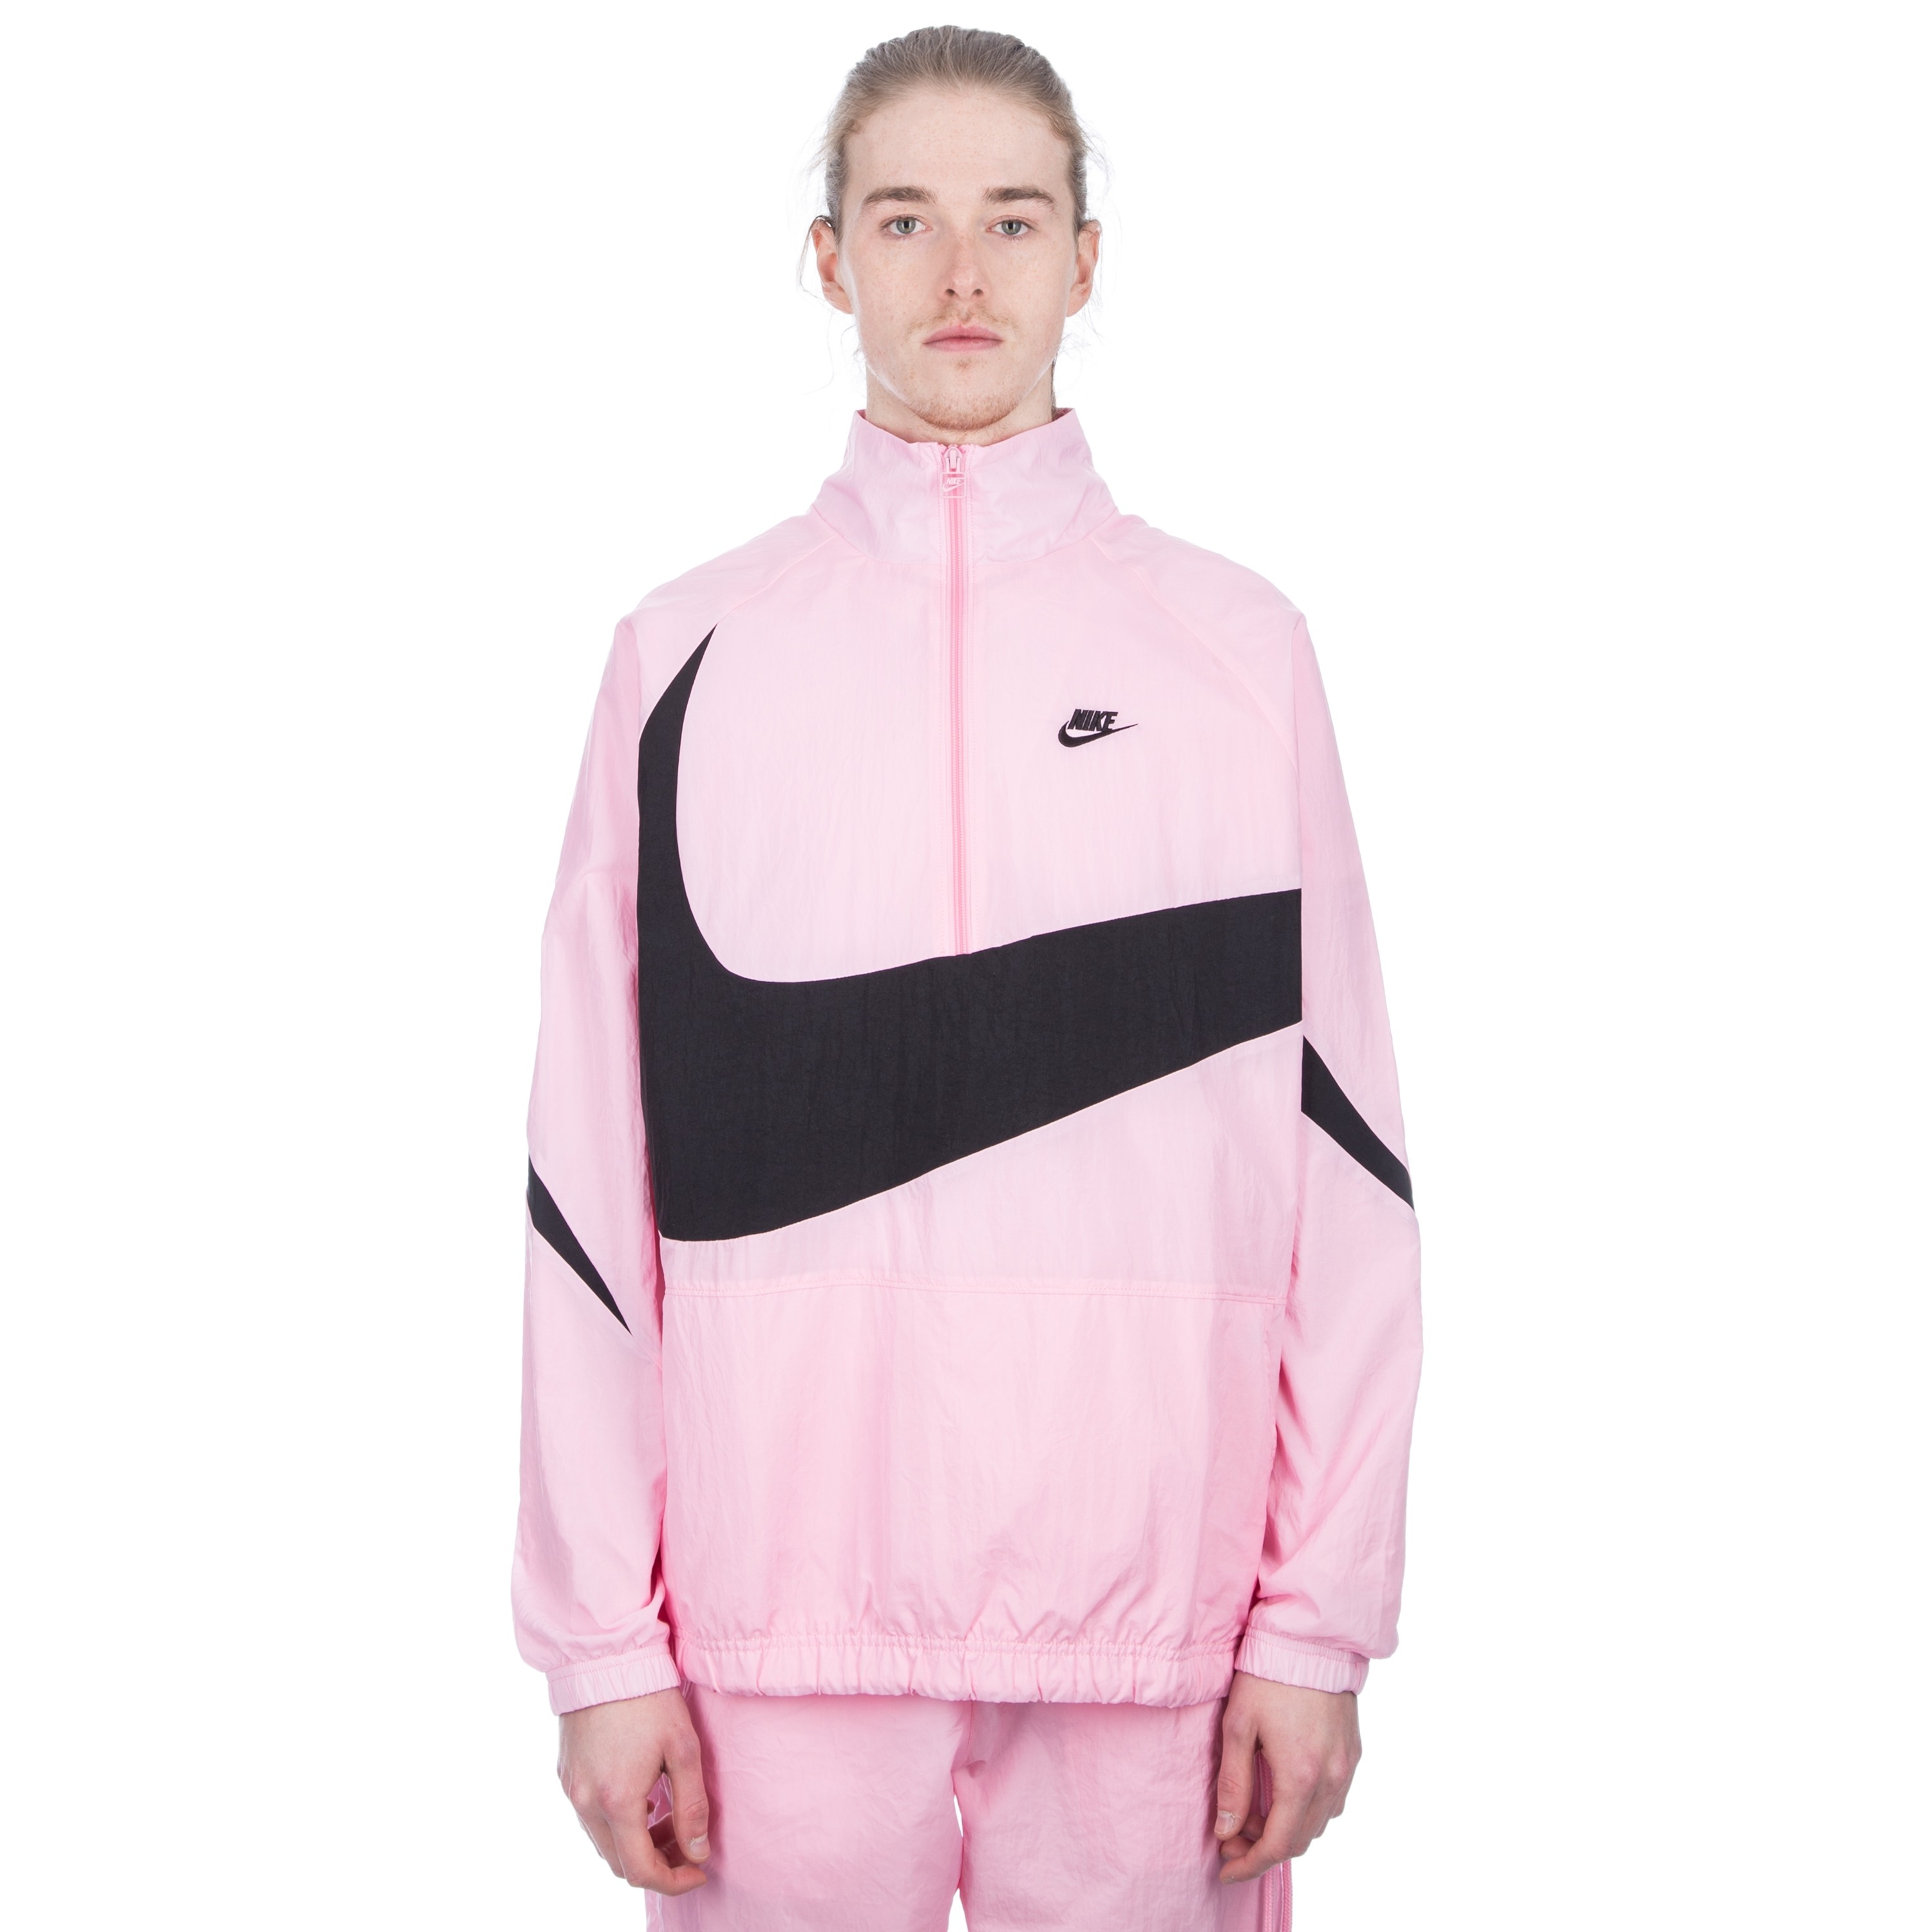 Nike Swoosh Woven Half-Zip Jacket (Pink/Black/Black) - Consortium.